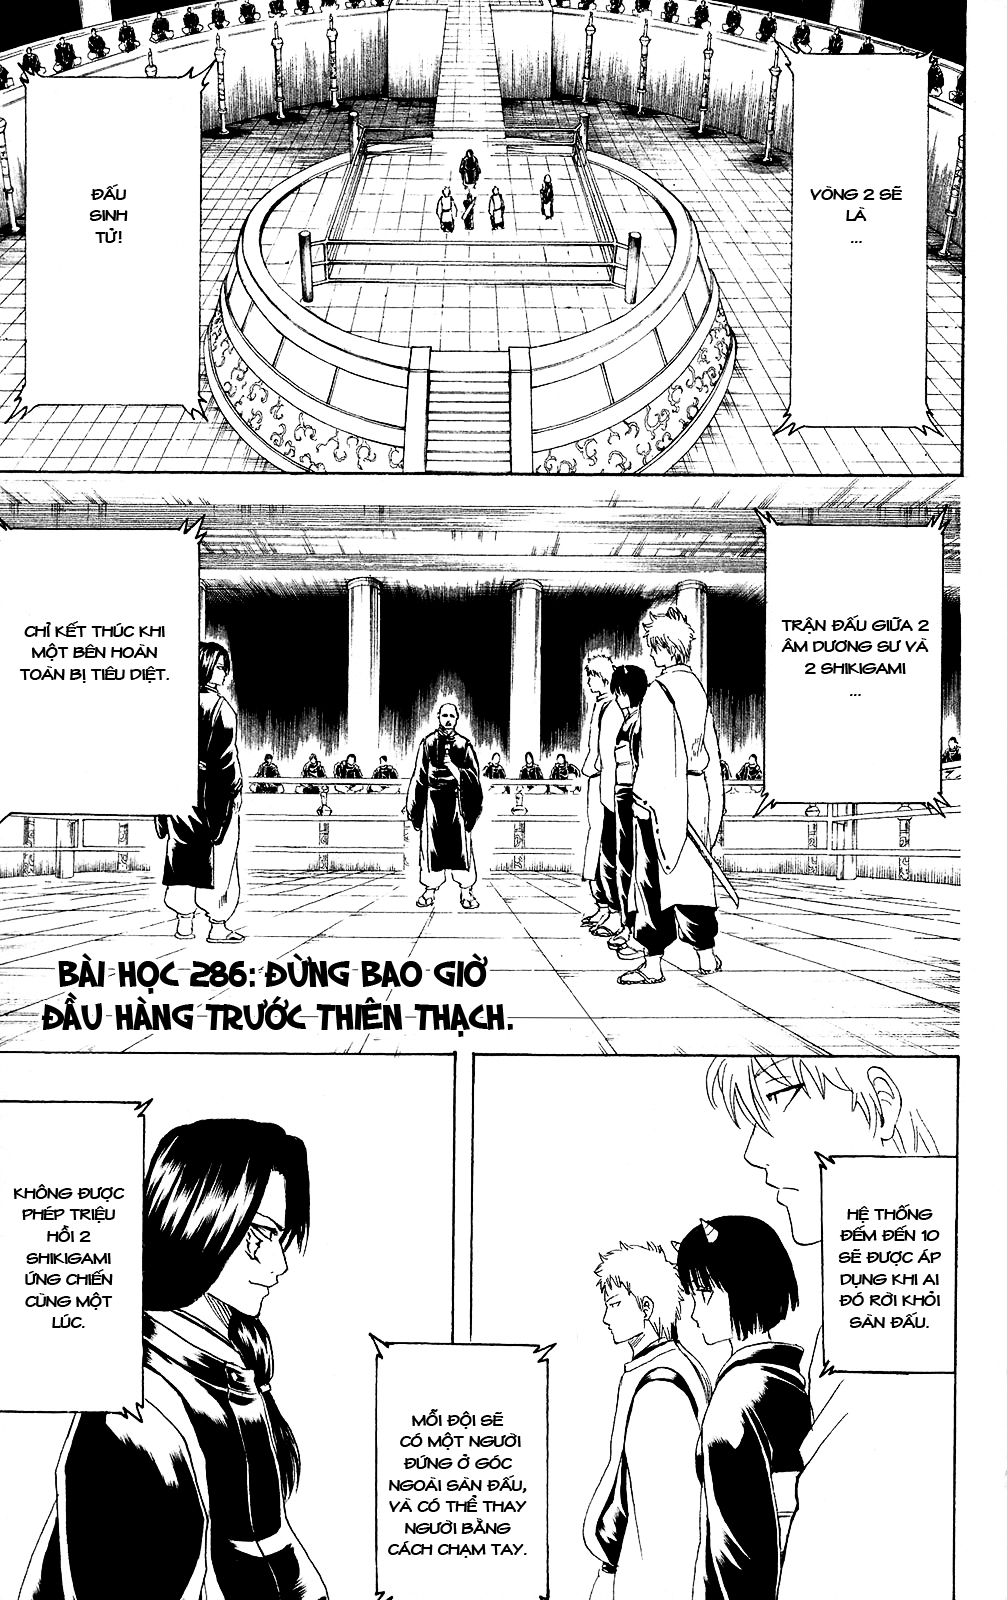 Gintama chapter 286 trang 2